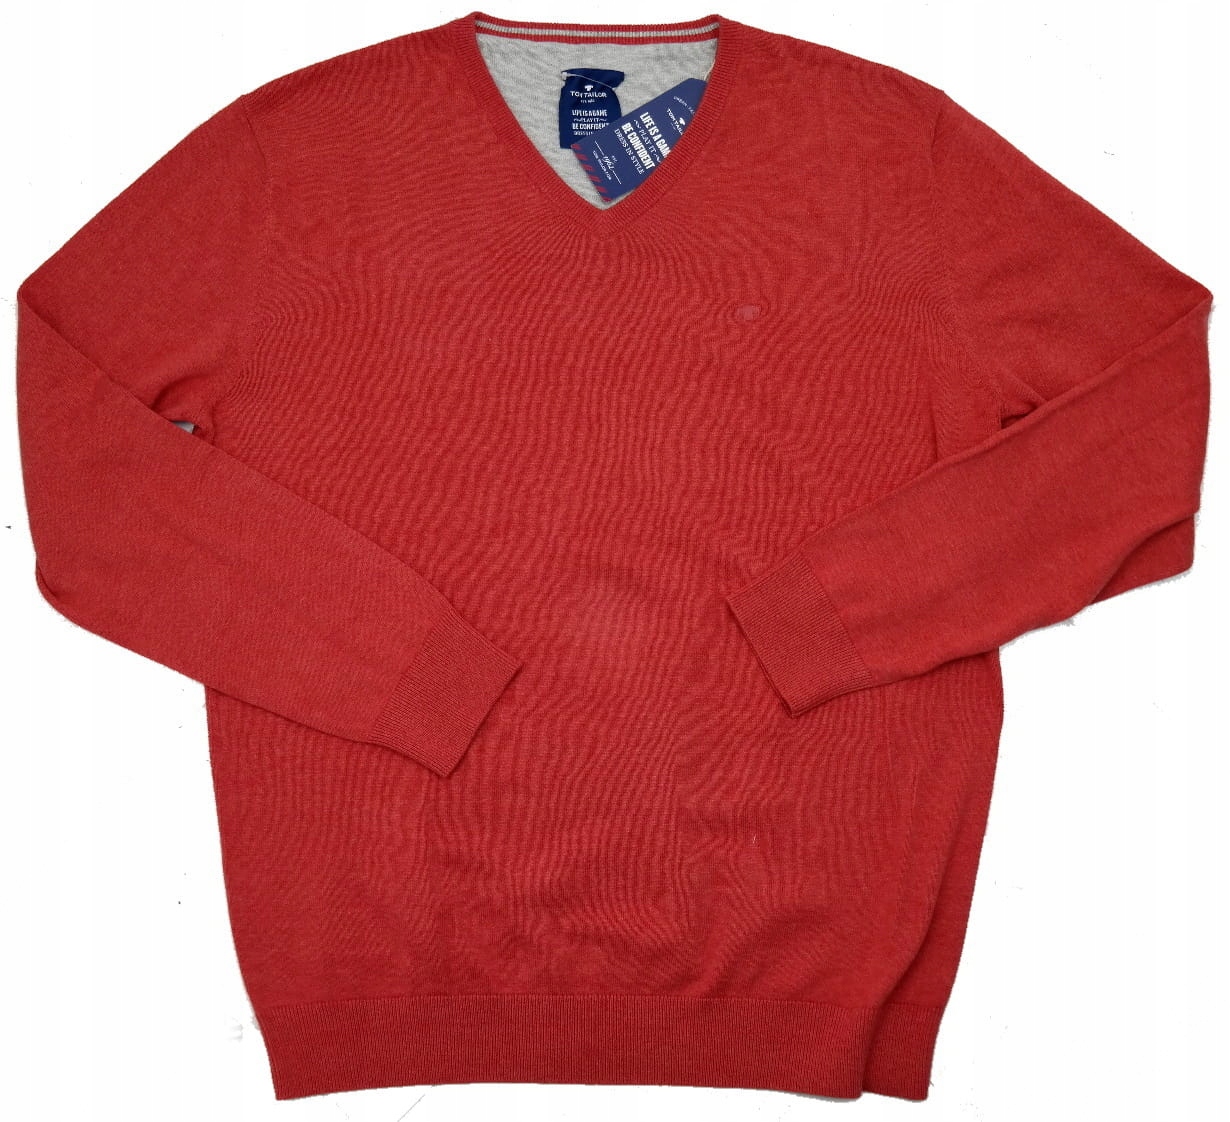 TOM TAILOR pánsky sveter oranžový SWTT01 (XXL)